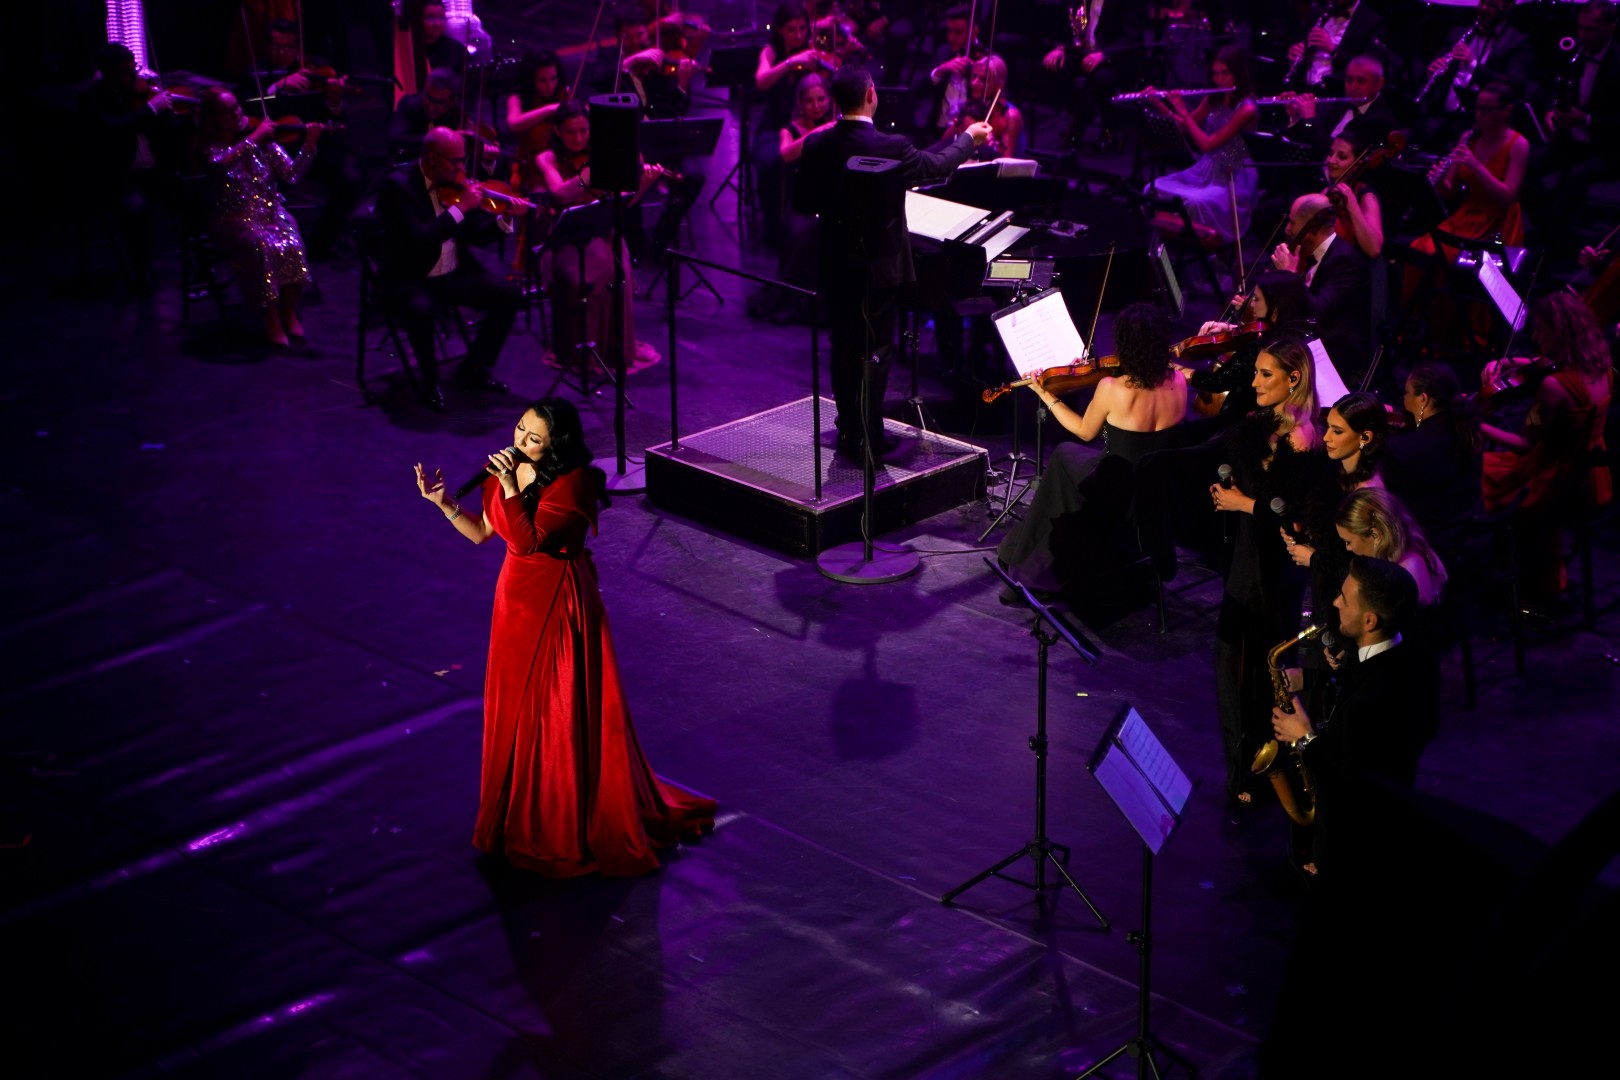 Andra at Opera Națională București in Bucharest on December 5, 2022 (38c994534b)